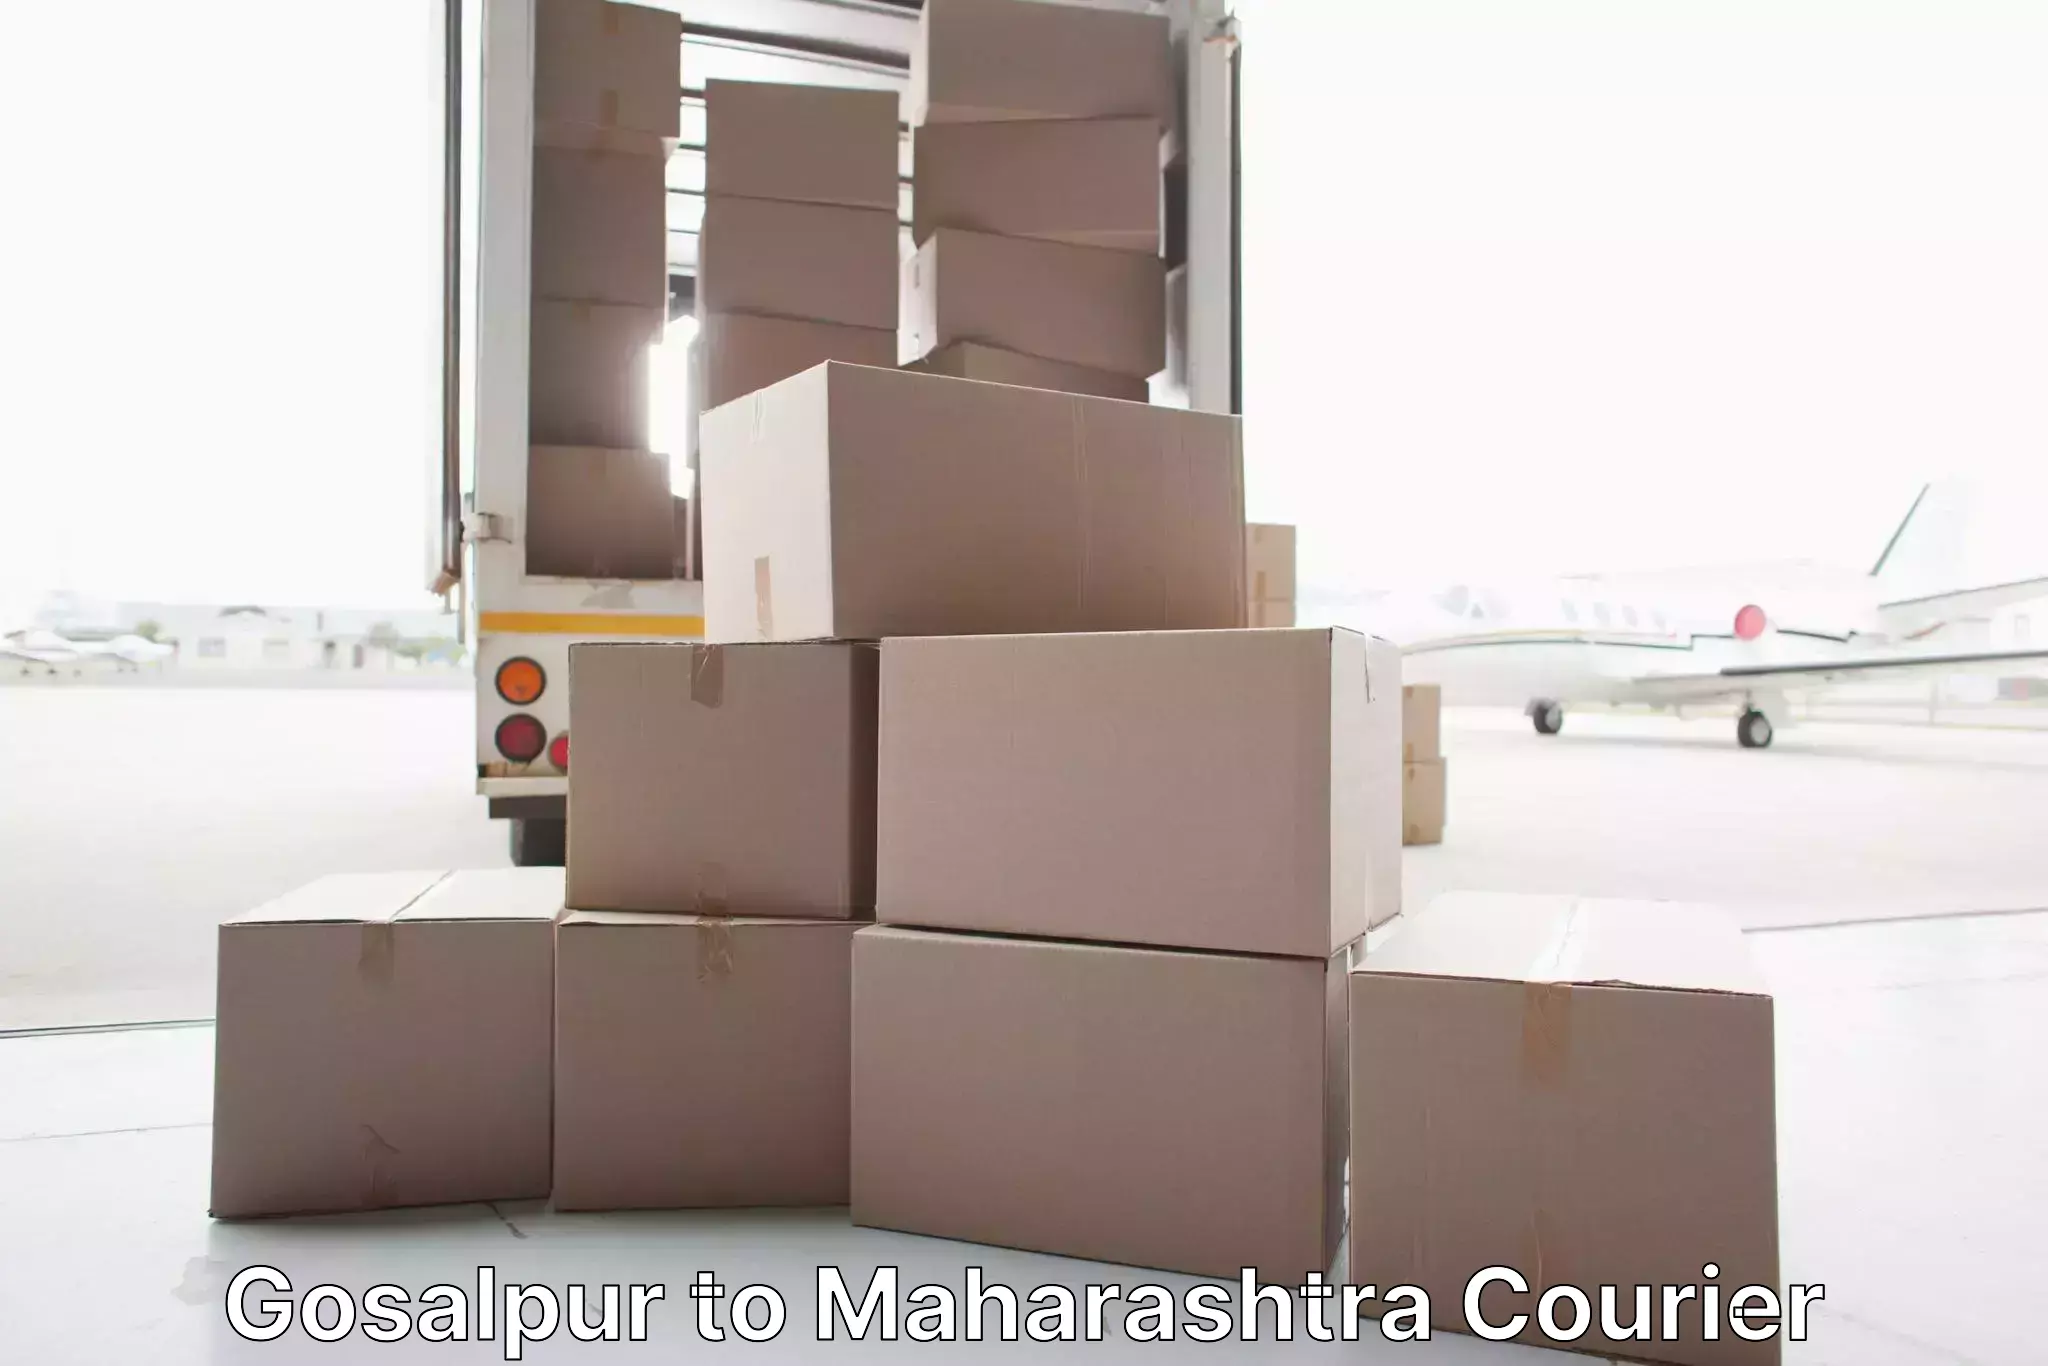 Home goods moving company Gosalpur to Maharashtra